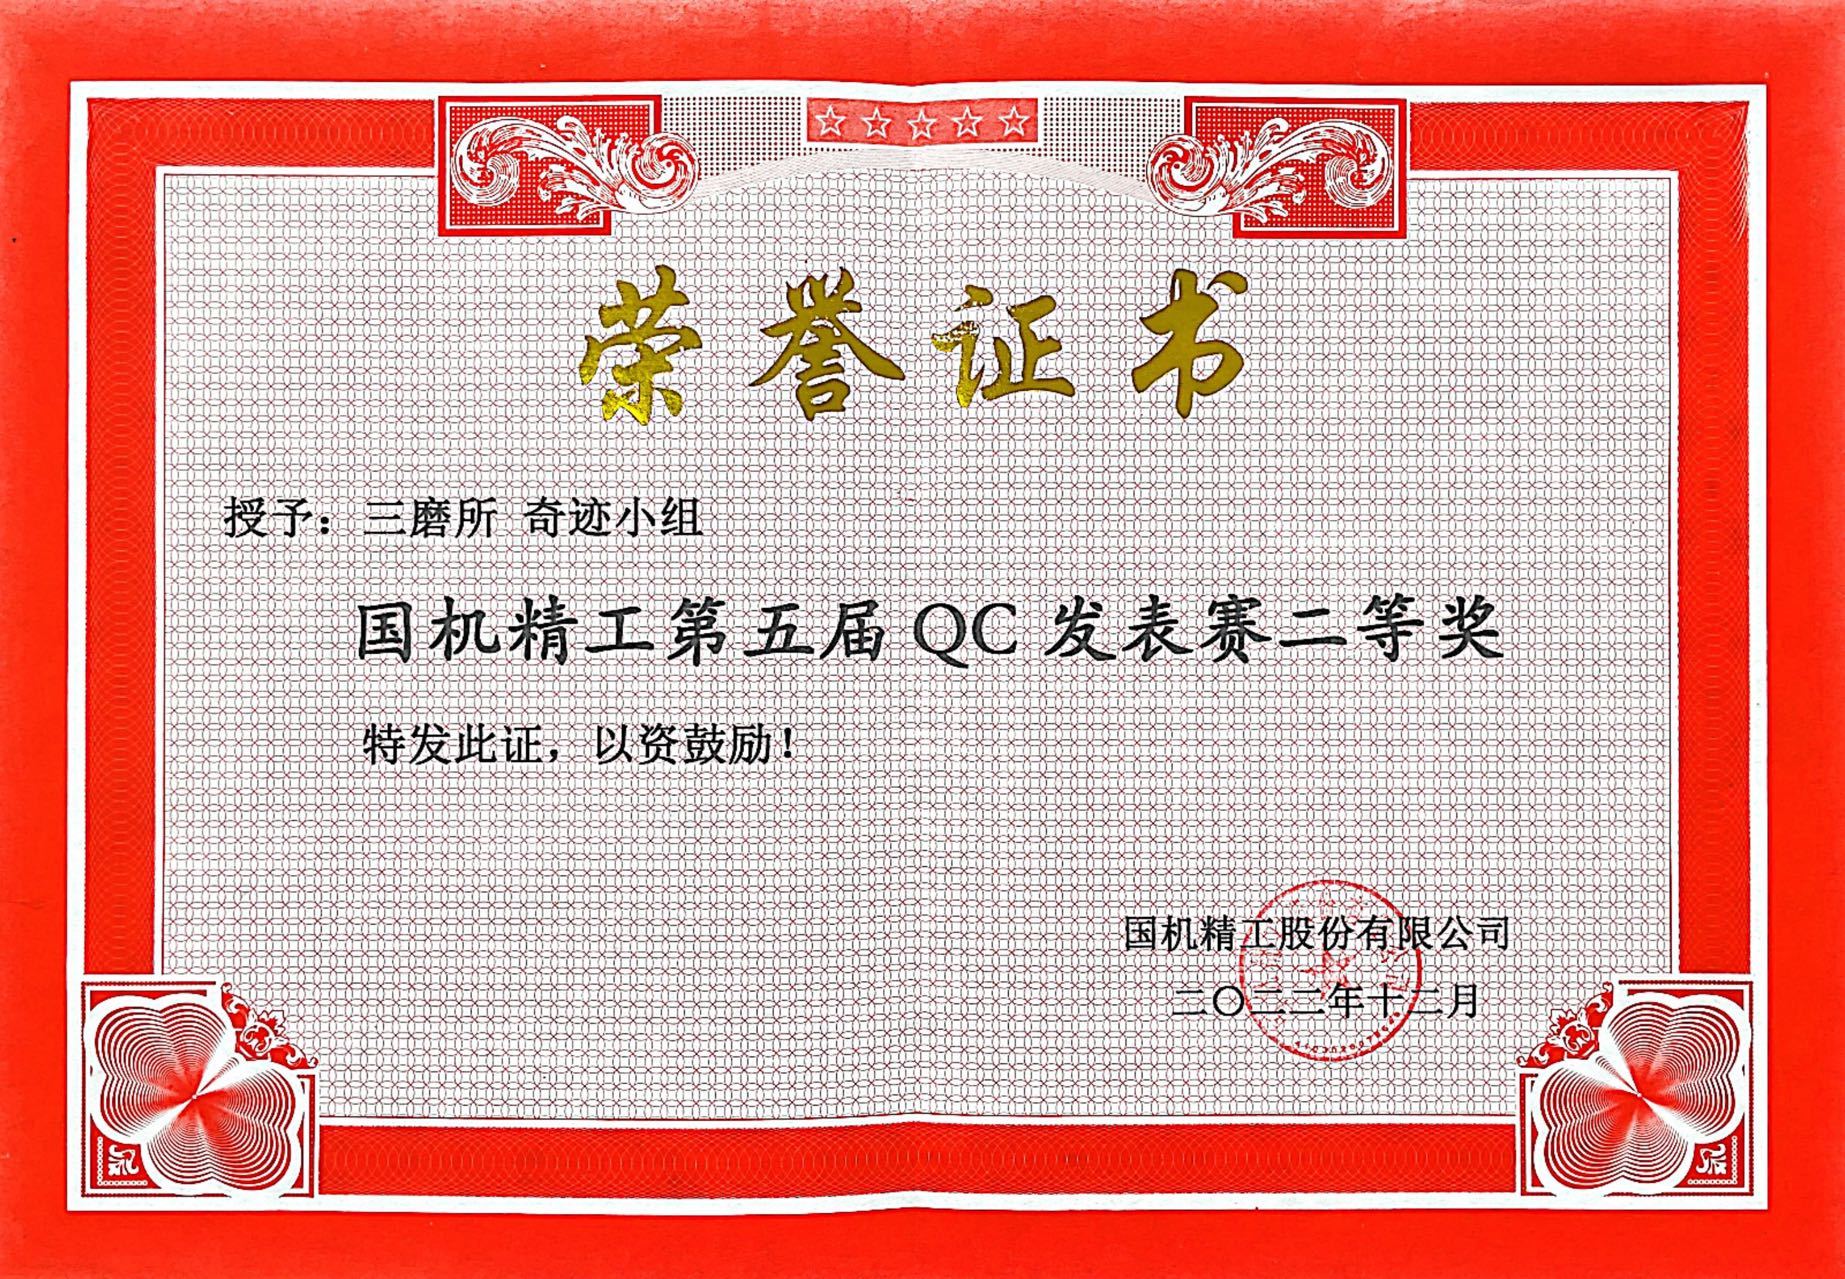 9.授予：三磨所奇迹小组国机精工第五届QC发表赛二等奖.jpg